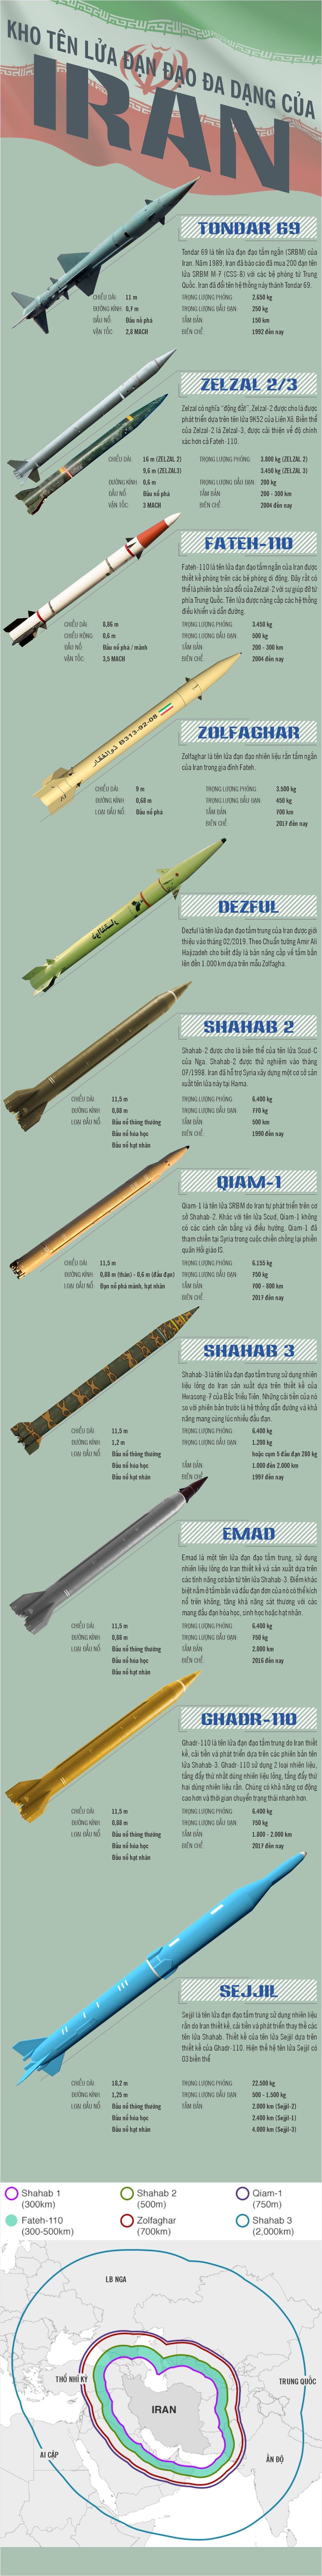 infographic kham pha kho ten lua dan dao sieu to khong lo cua iran